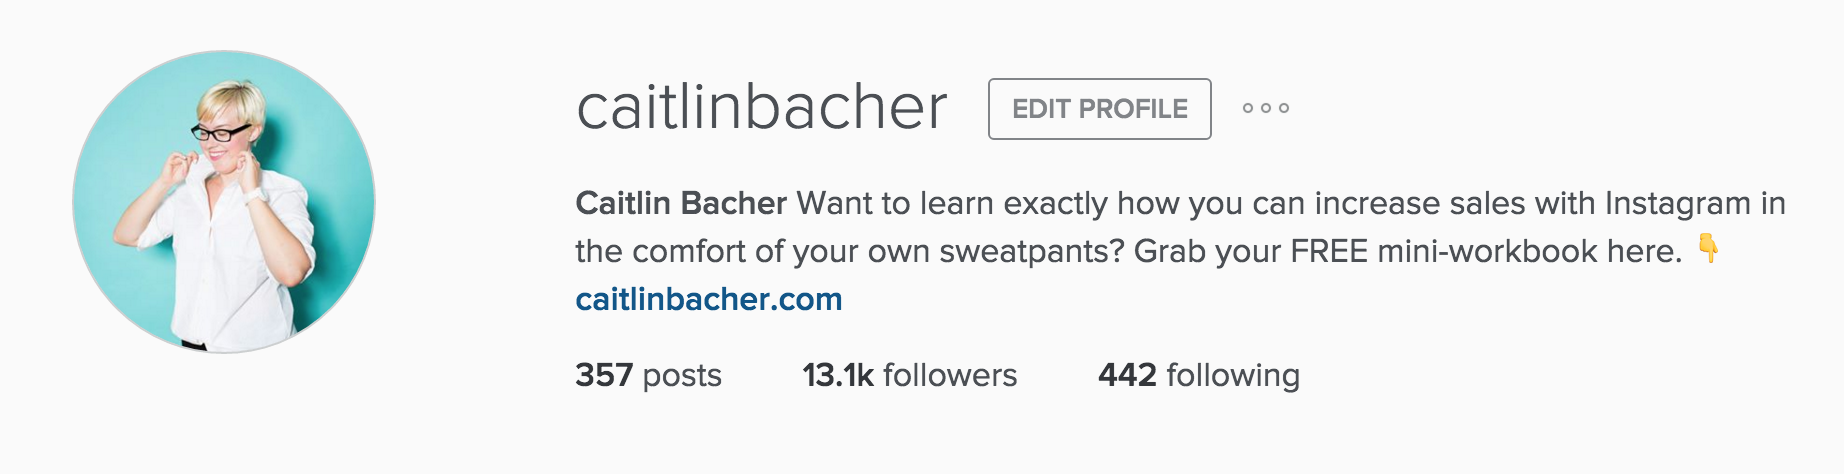 How To Write Your Instagram Bio Like A Boss - caitlinbacher.com